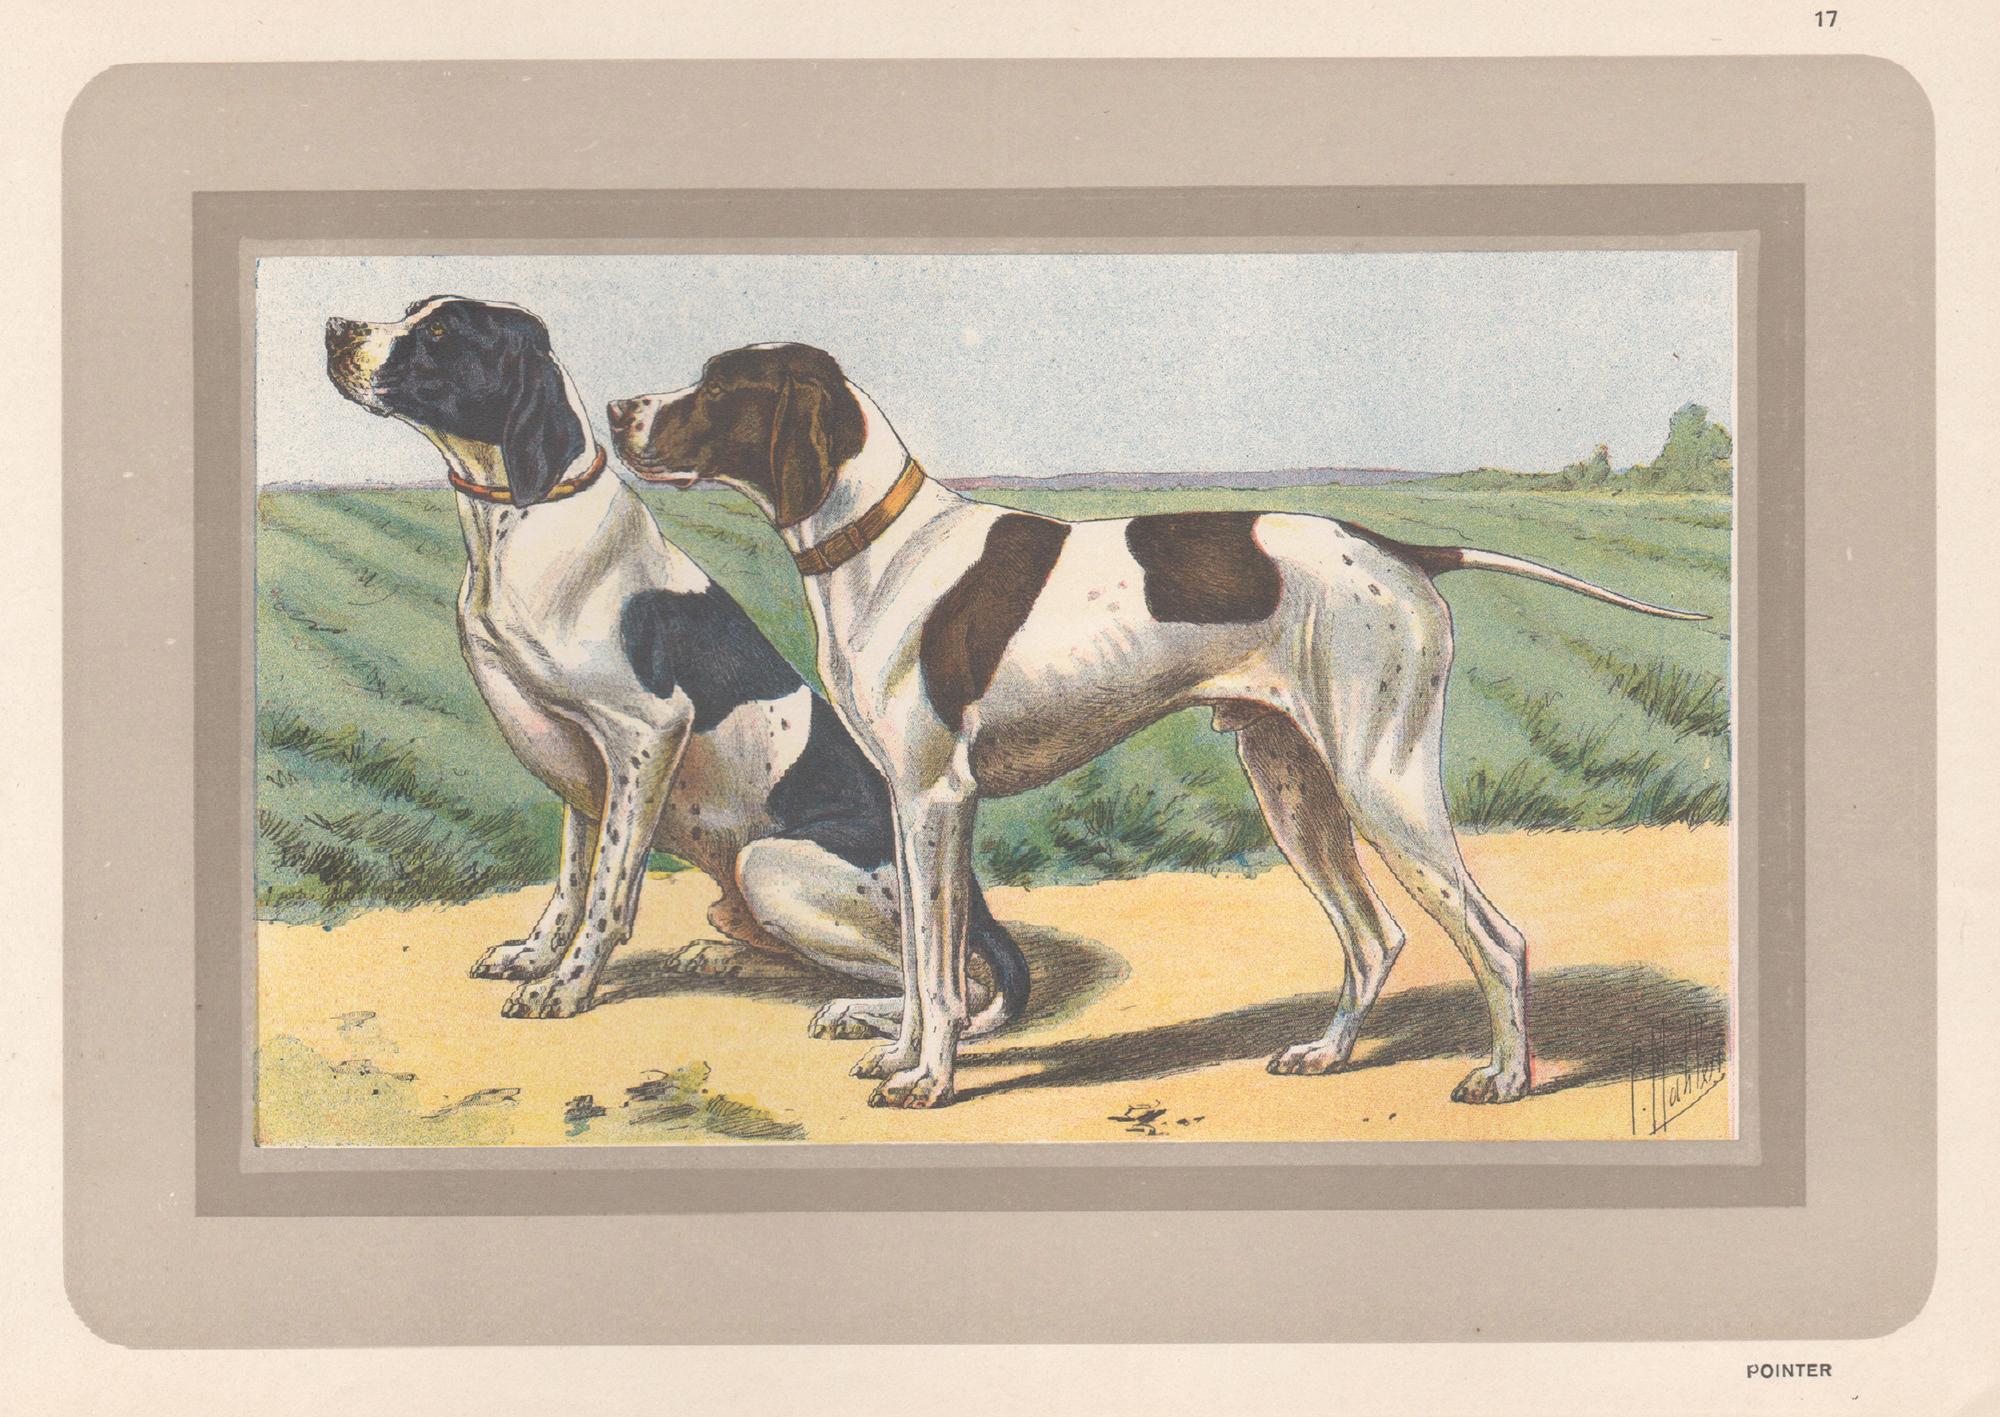 Animal Print P. Mahler - Pointer, impression chromolithographie d'un chien de chasse français, années 1930